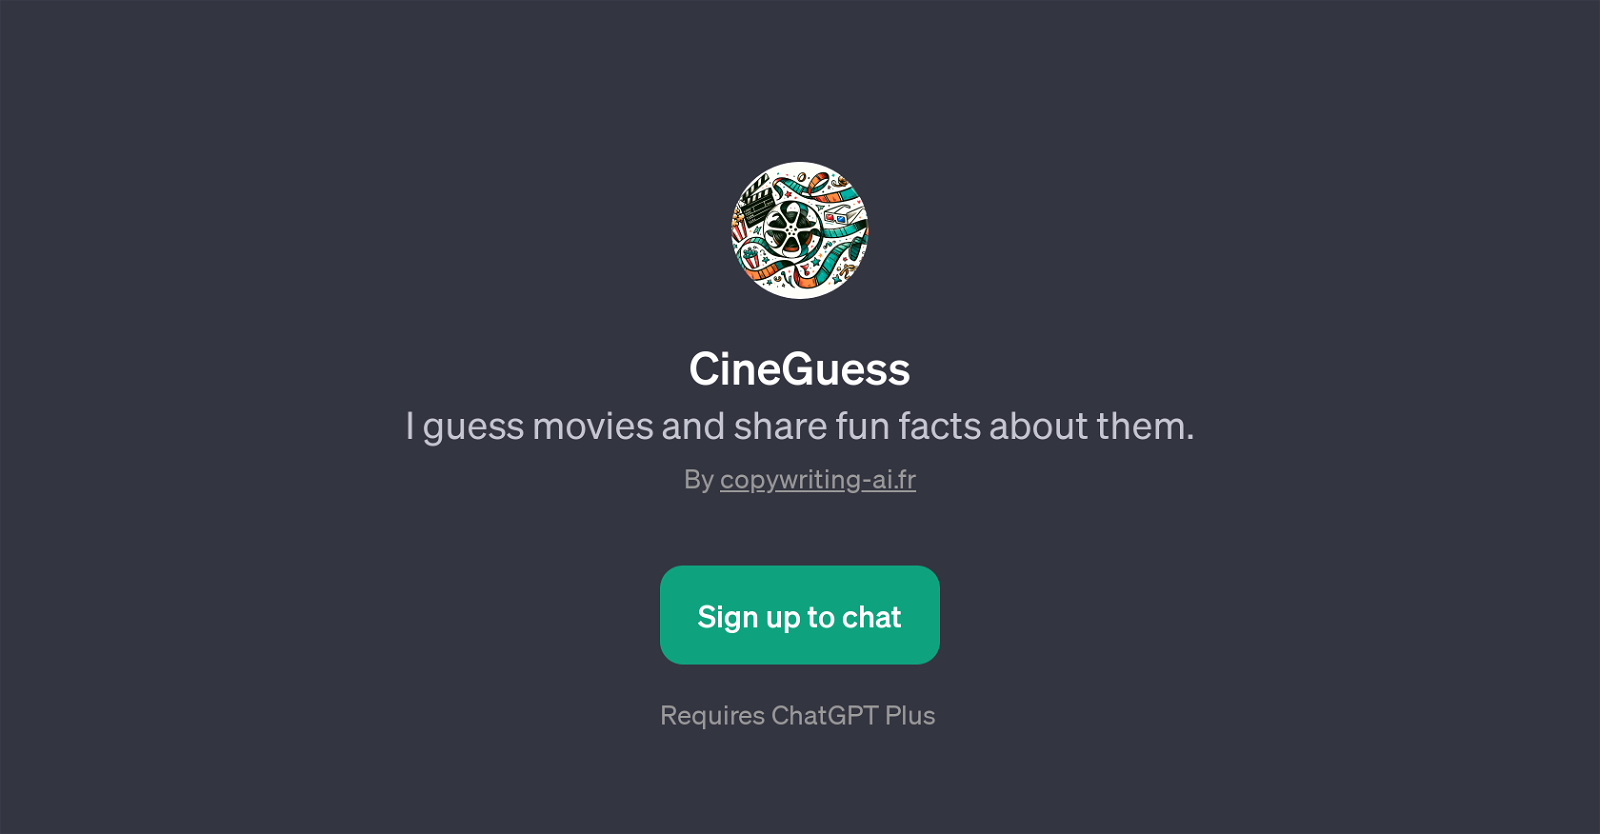 CineGuess website